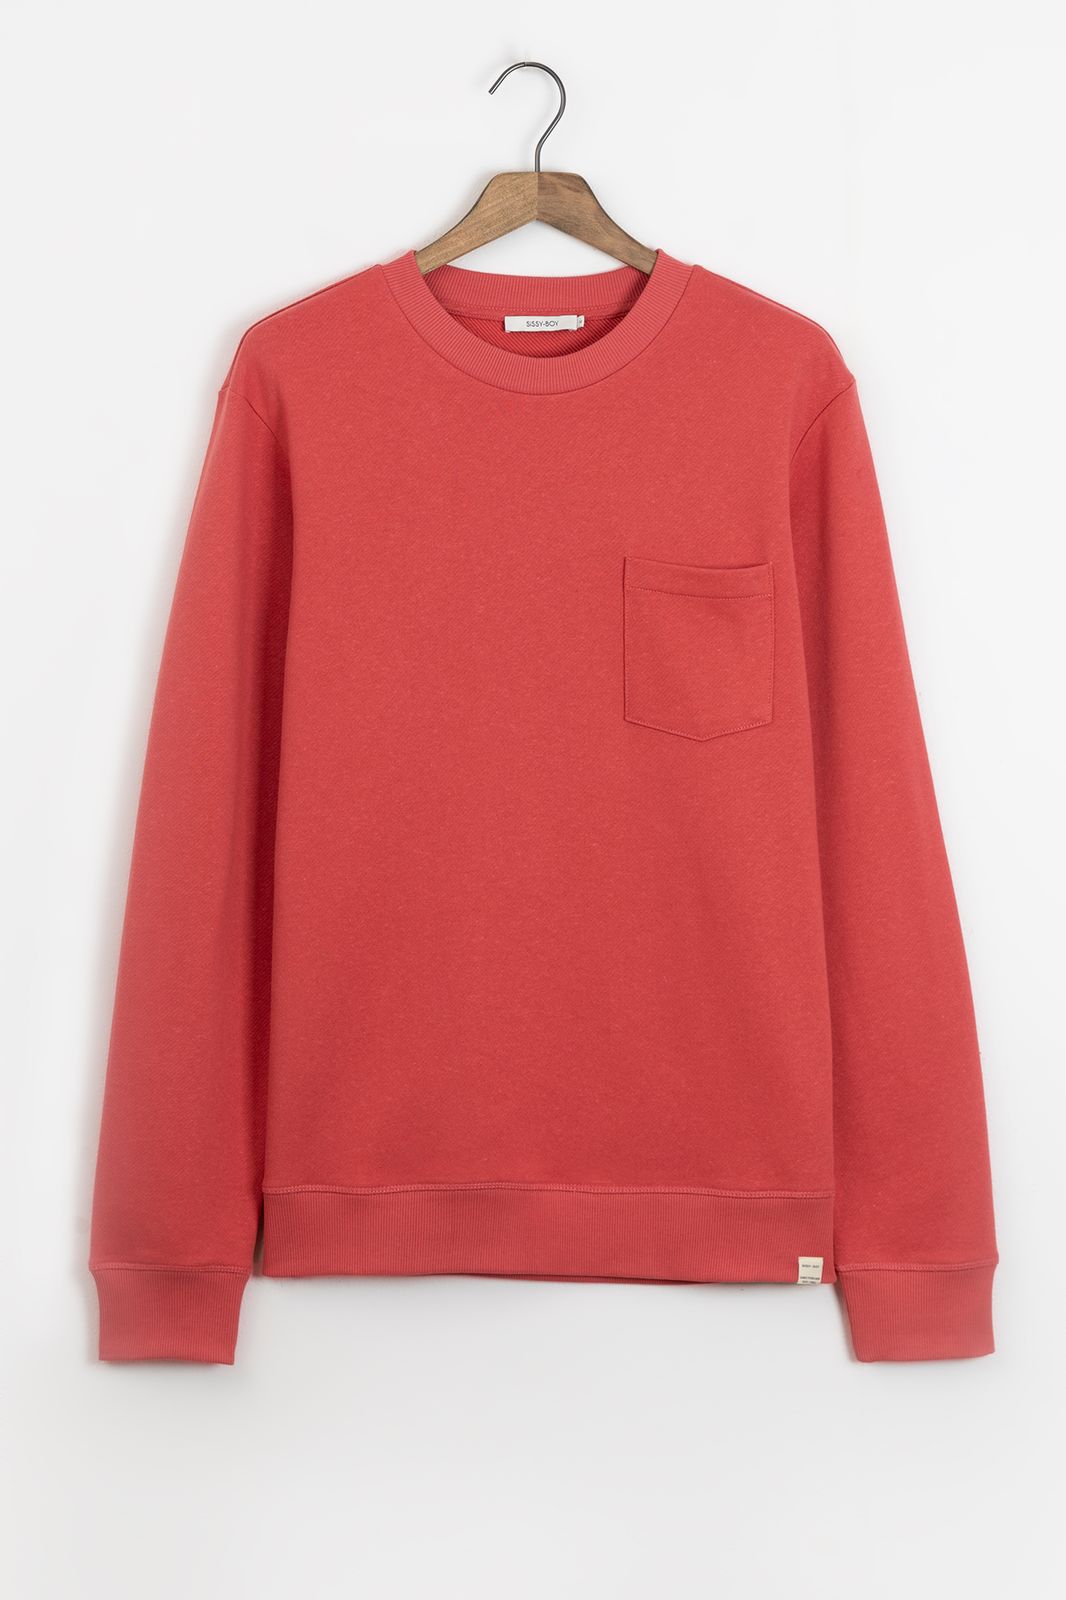 Sweater mit Brusttasche - rot